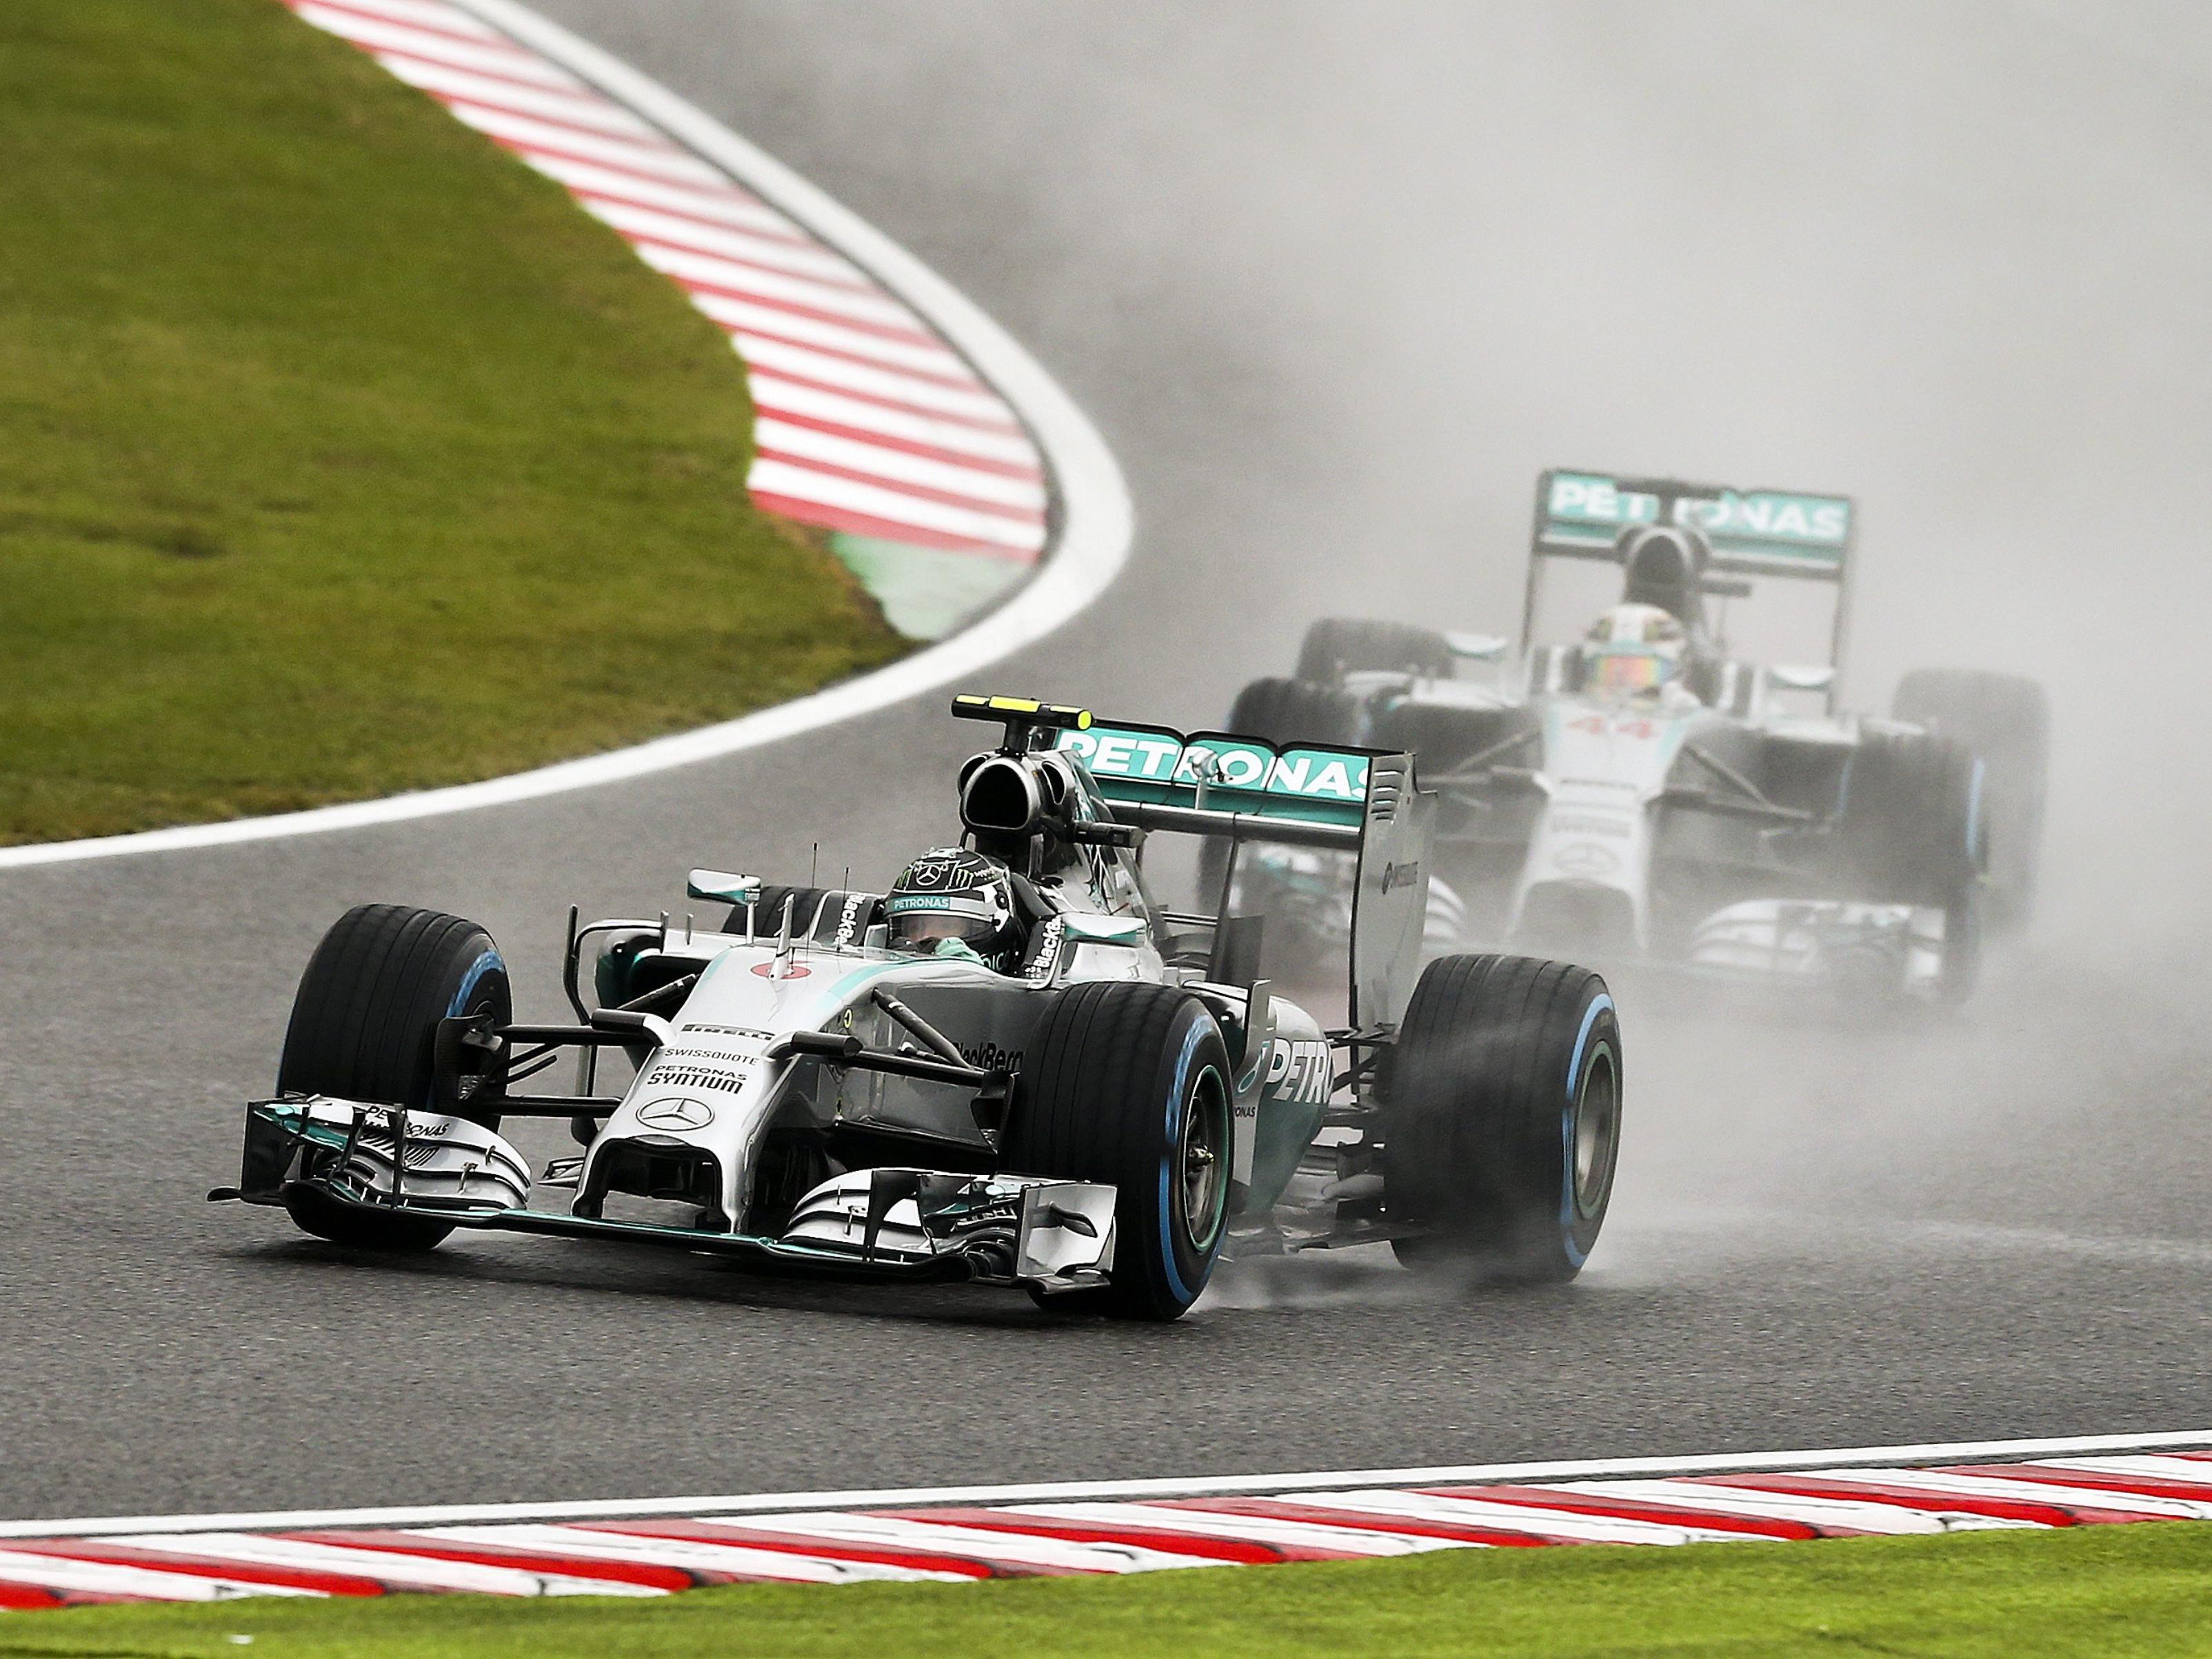 Hamilton siegte vor Rosberg - Marussia-Pilot Bianchi verletzt und mit Helikopter abtransportiert.